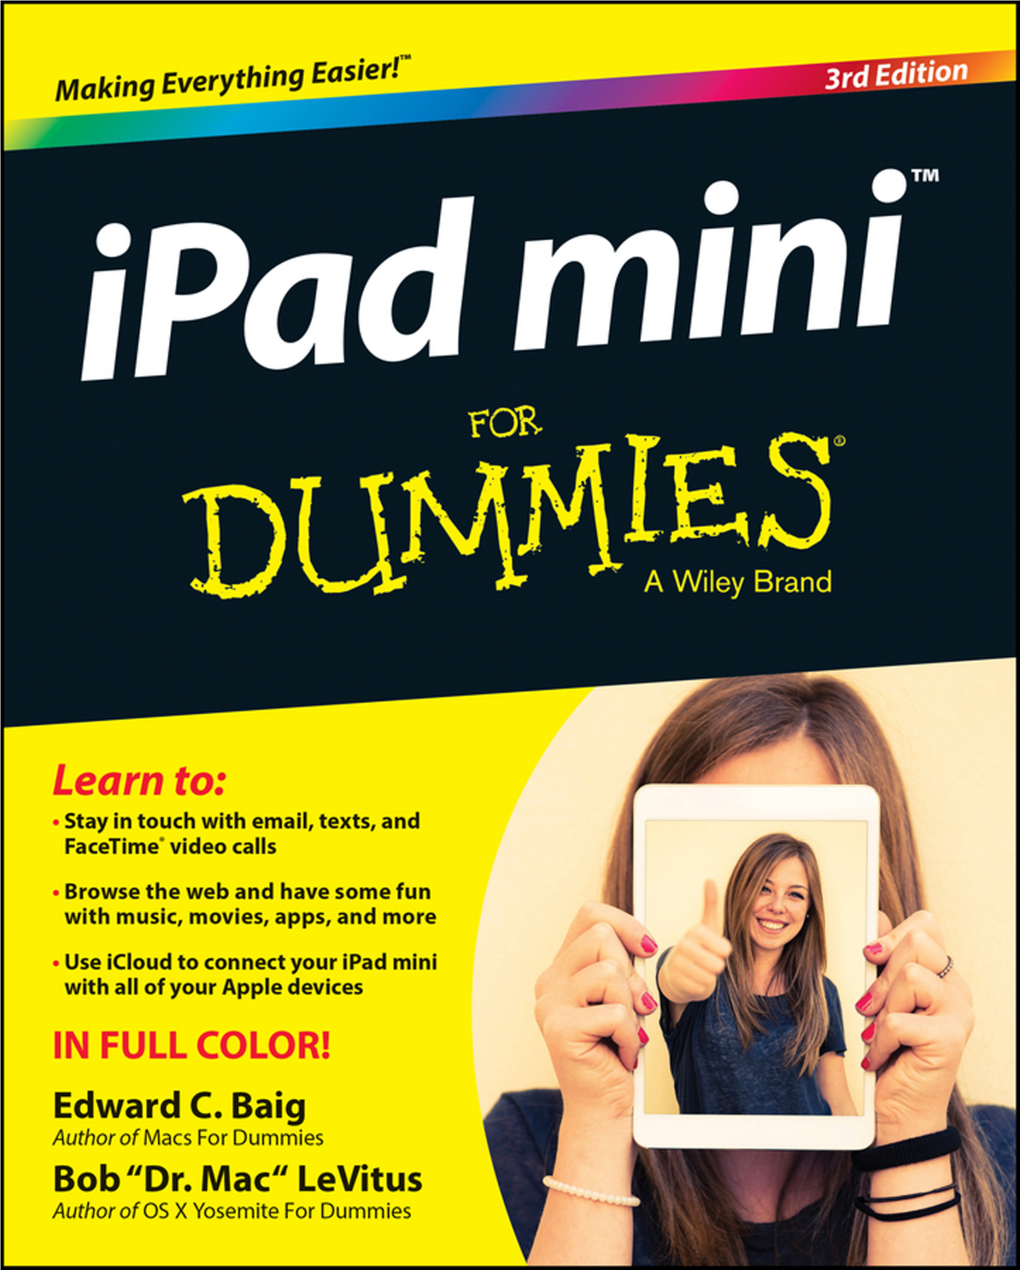 The Ipad Mini As an Ipod